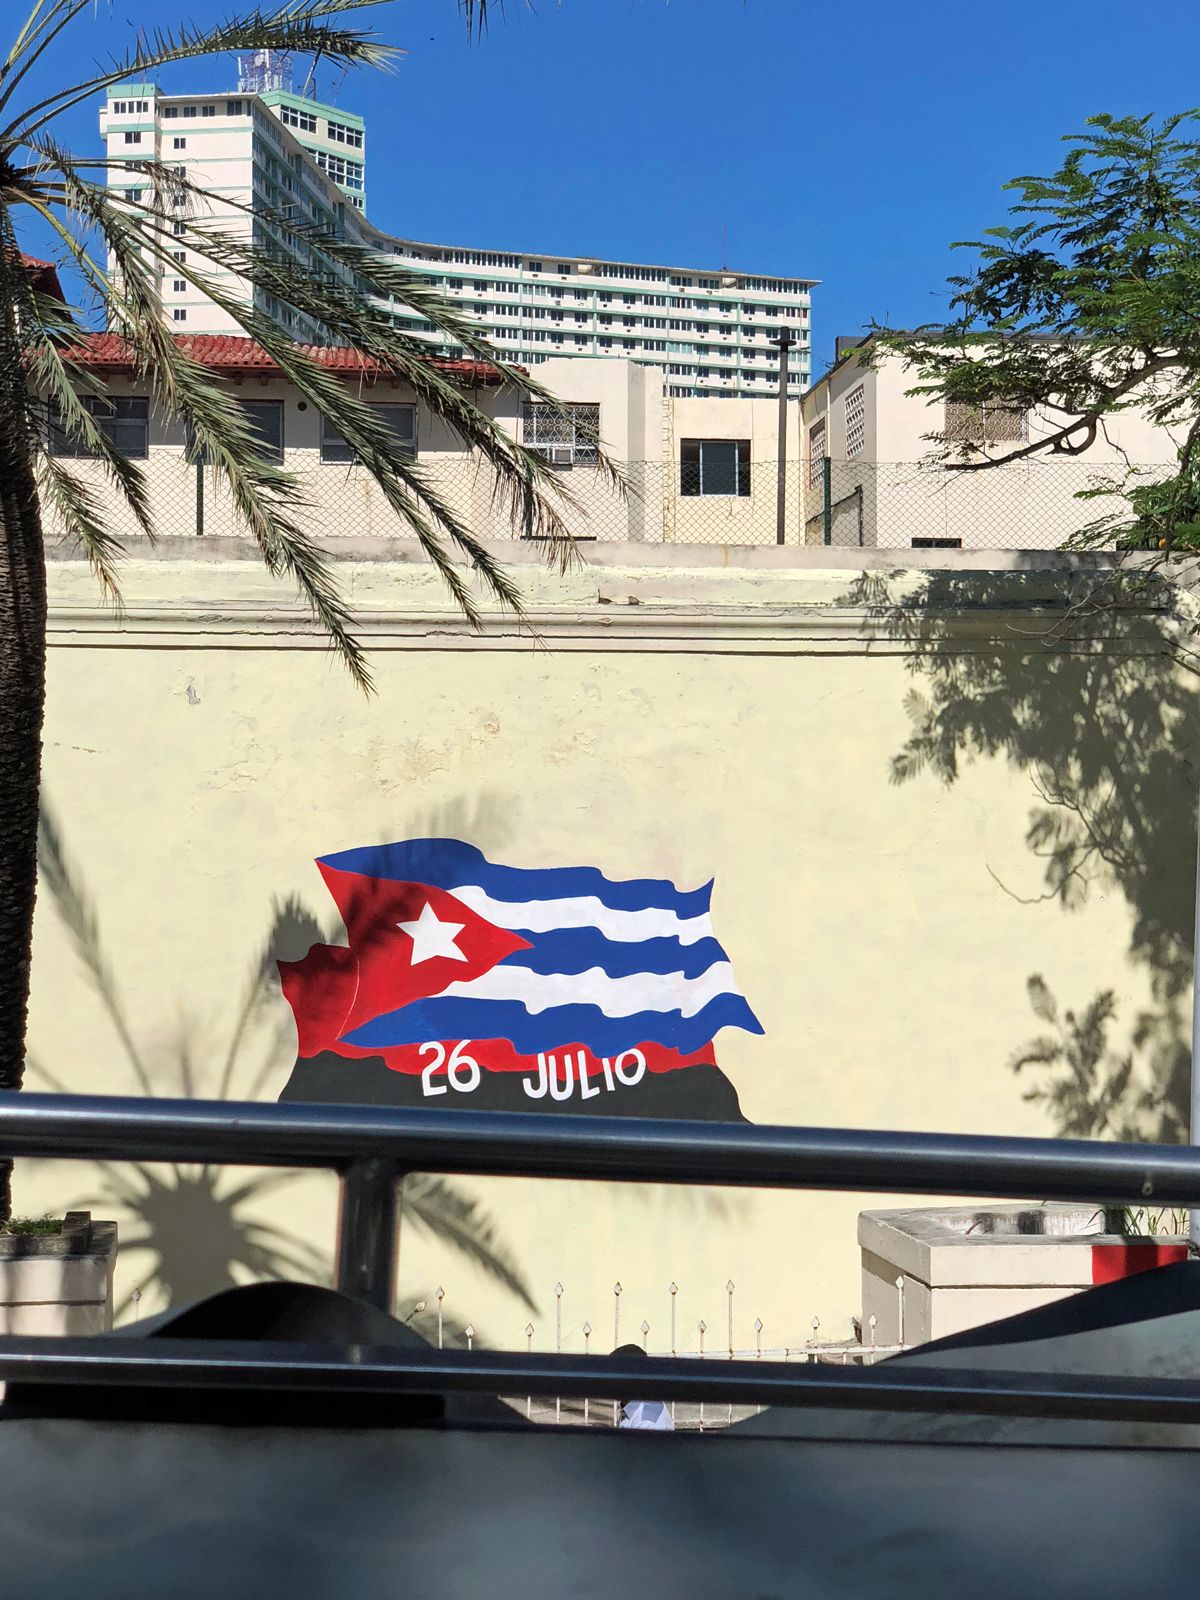 キューバ旅行 メキシコ経由でキューバの首都ハバナへ 革命広場 世界遺産のオールド ハバナ あしたの風 楽天ブログ